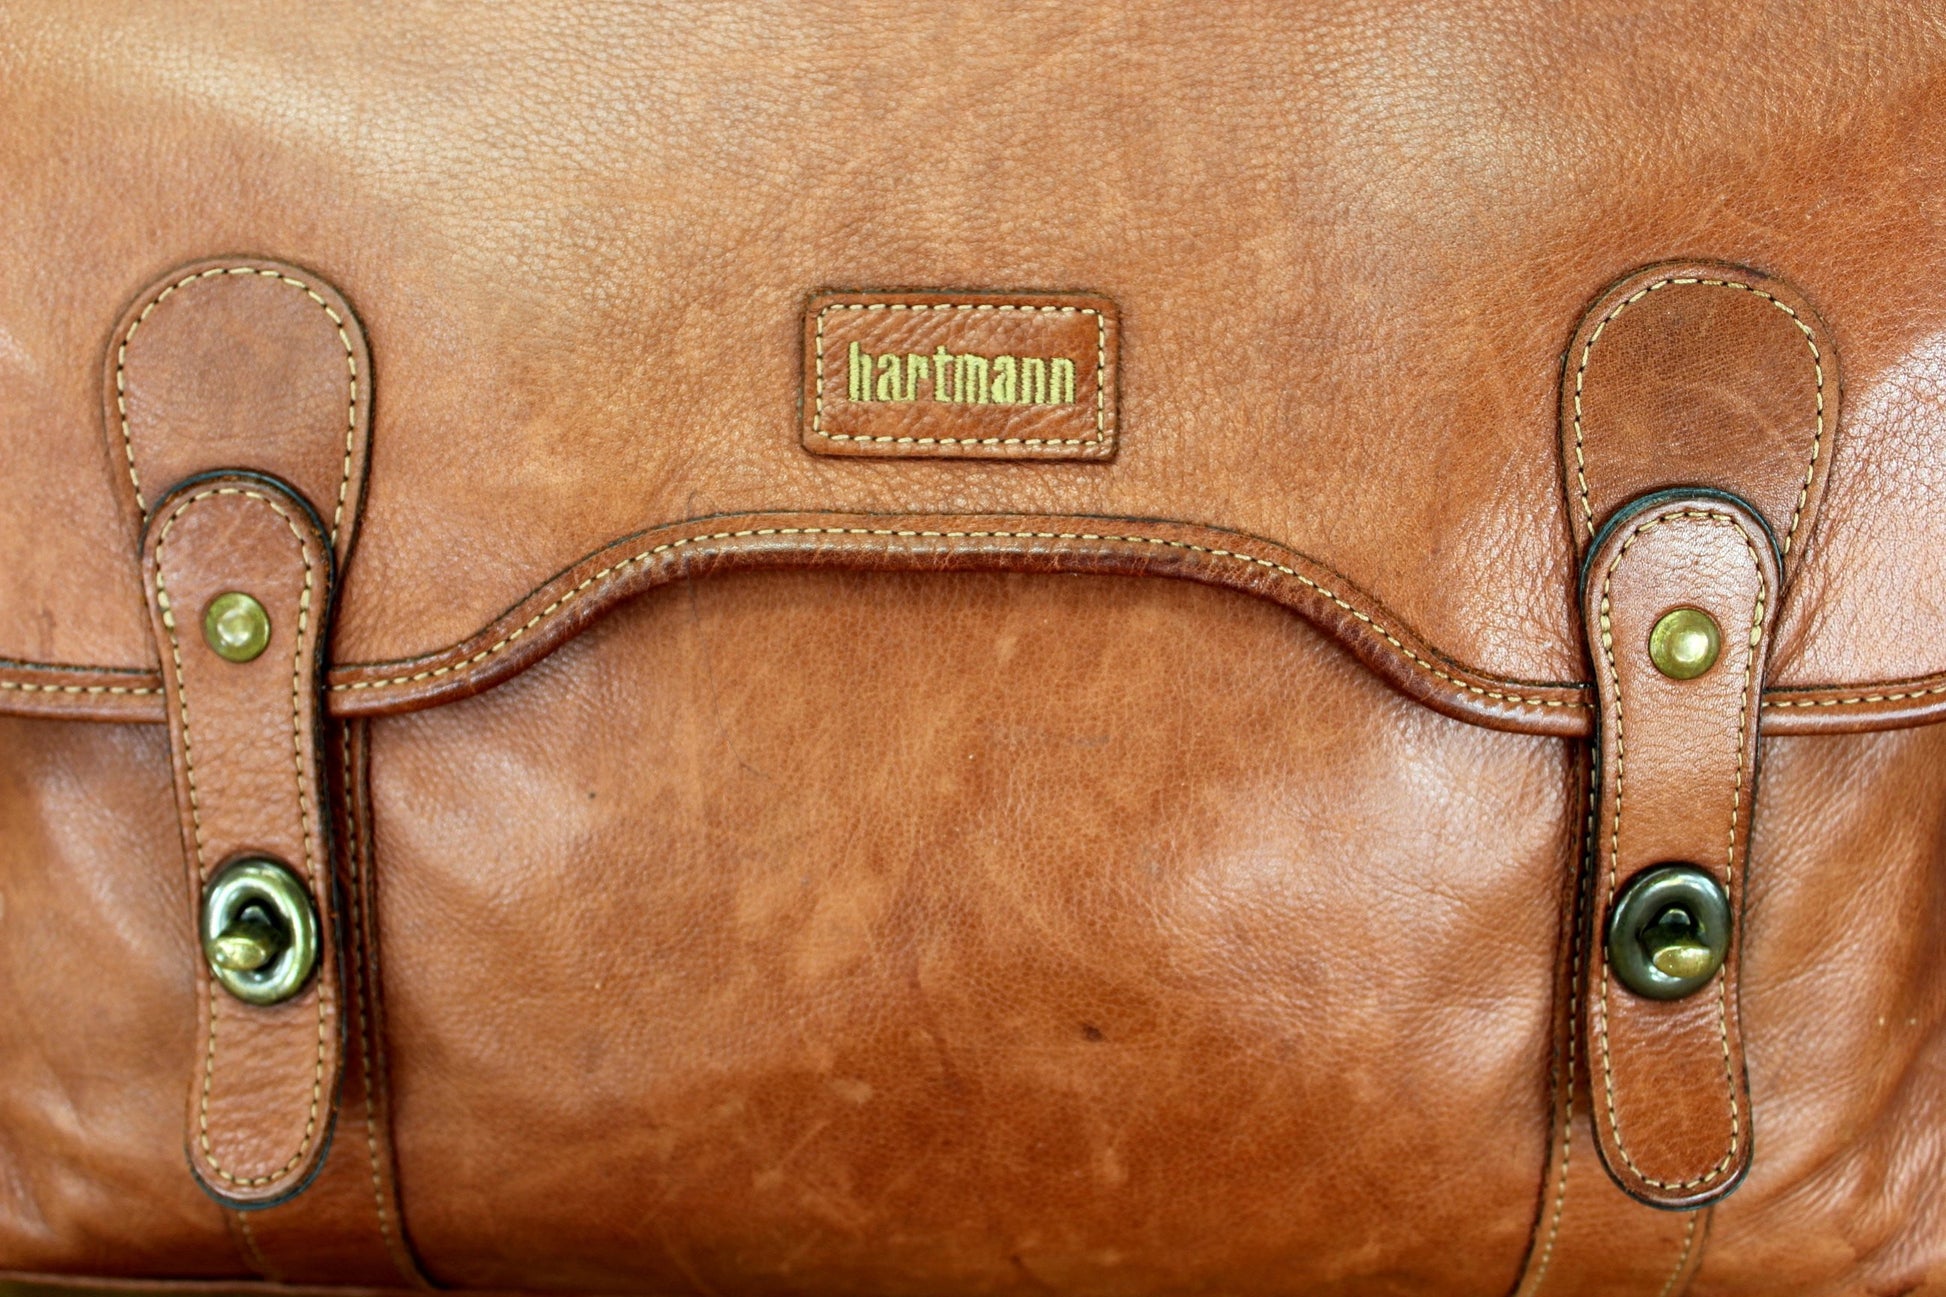 LARGE VINTAGE HARTMANN Belting Leather Suitcase Luggage Case